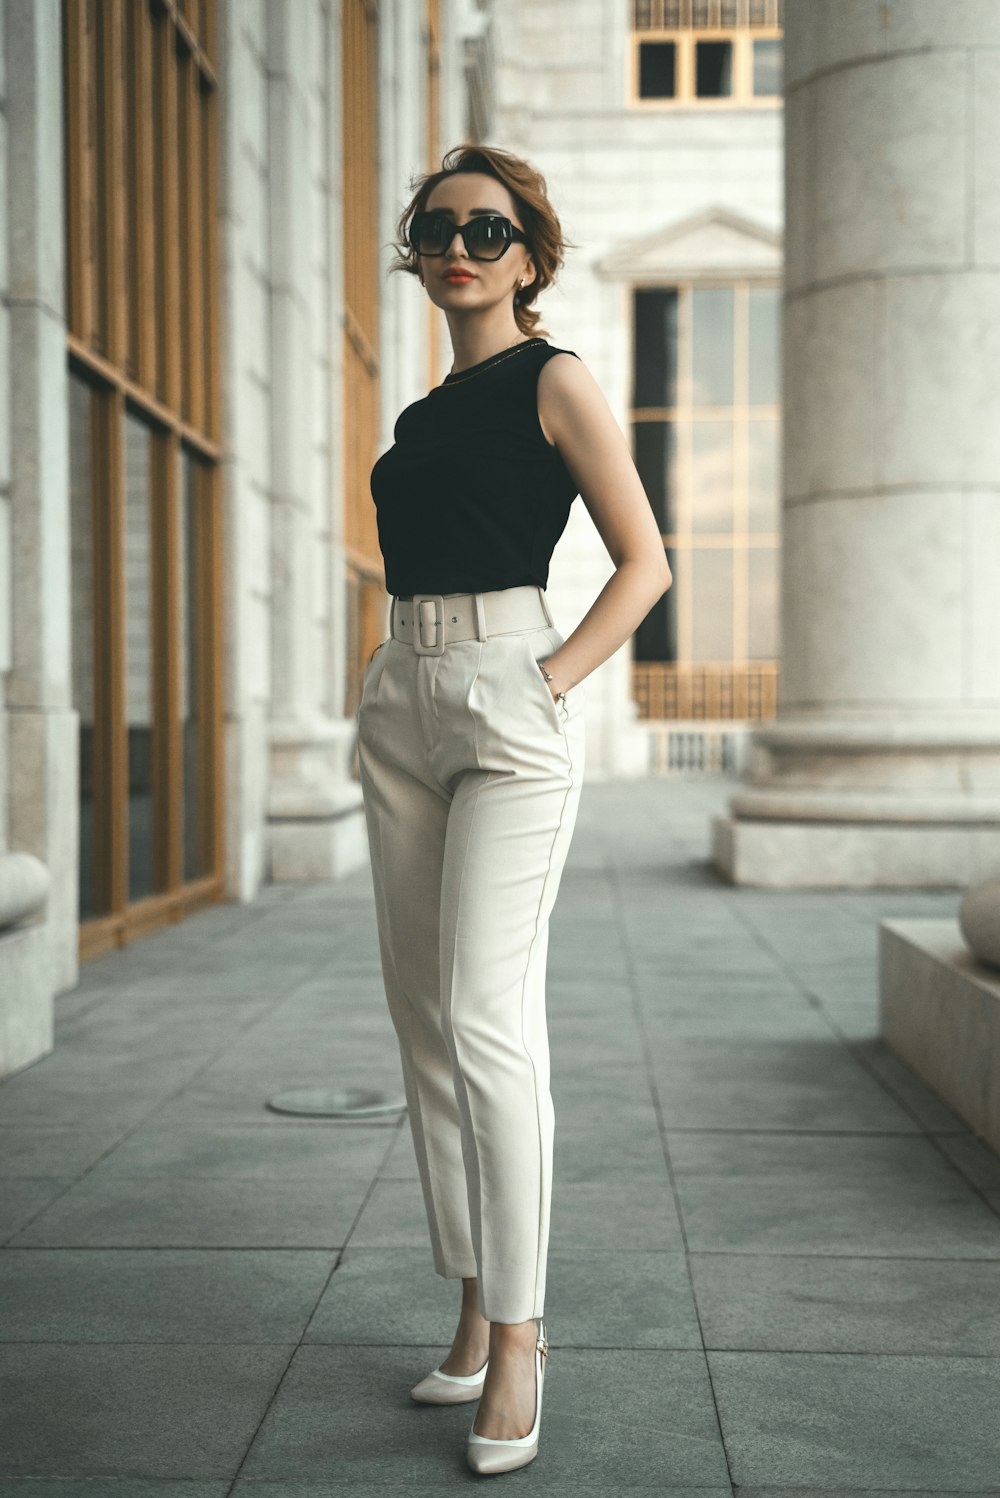 Eine Frau in schwarzem Oberteil und weißer Hose